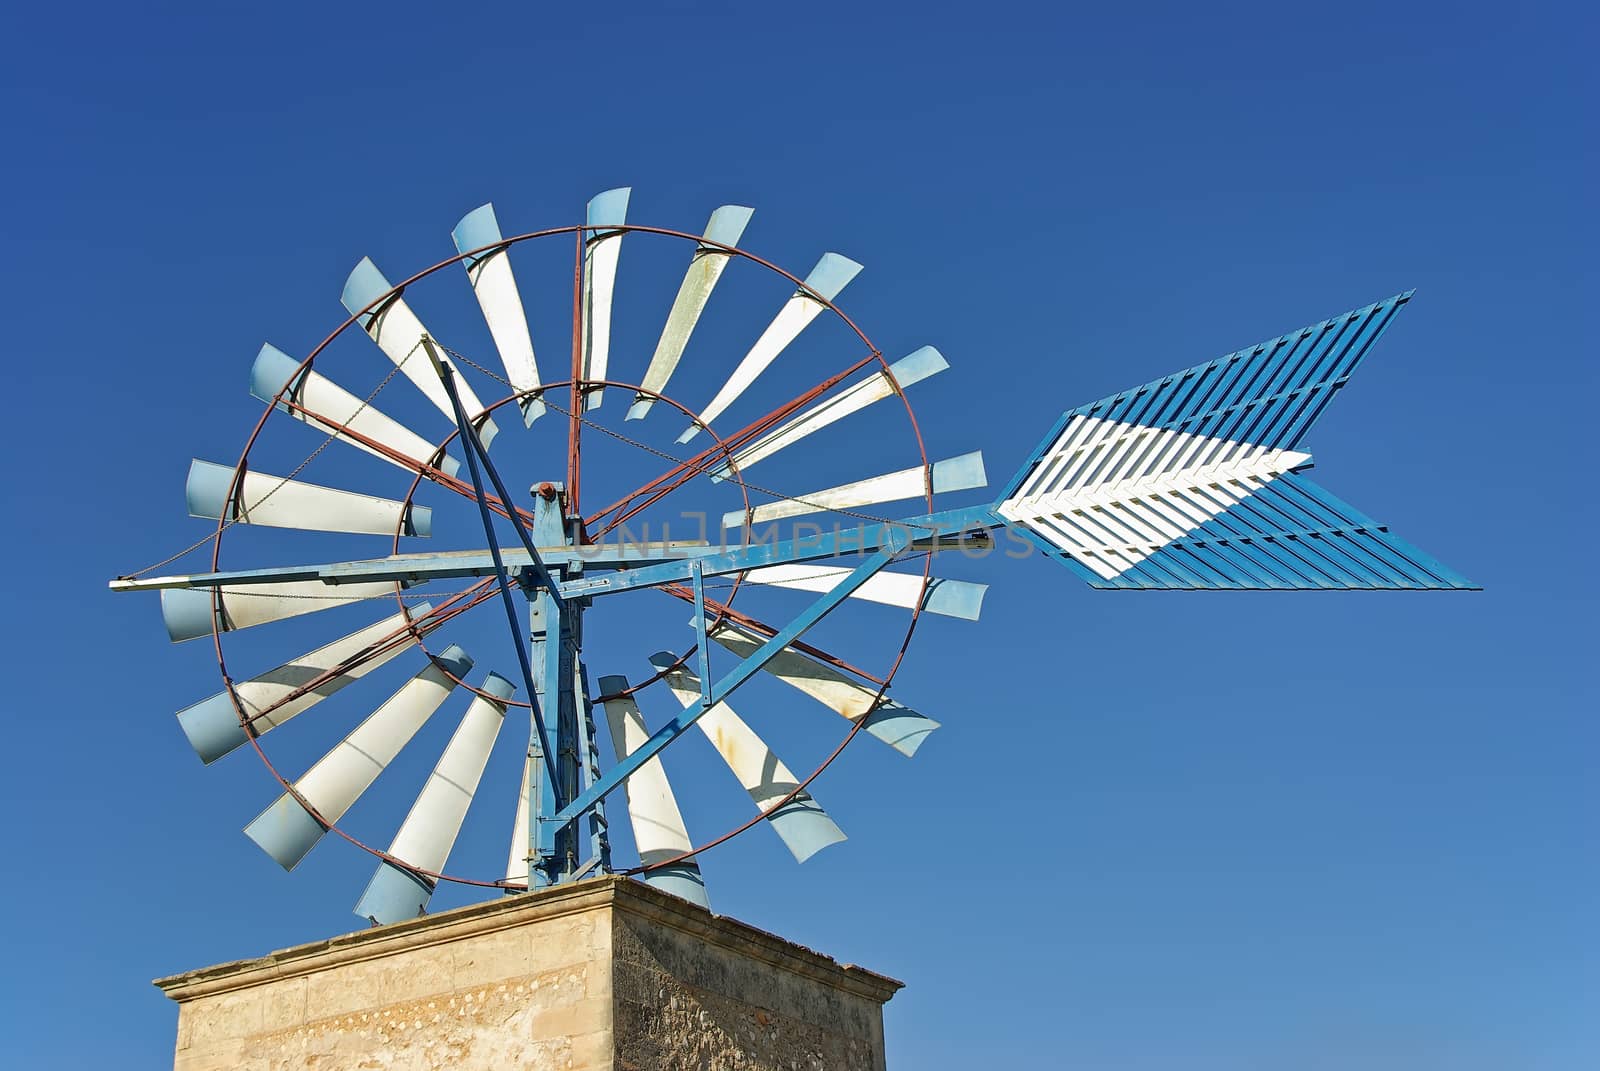 Windmill in Majorca by JCVSTOCK